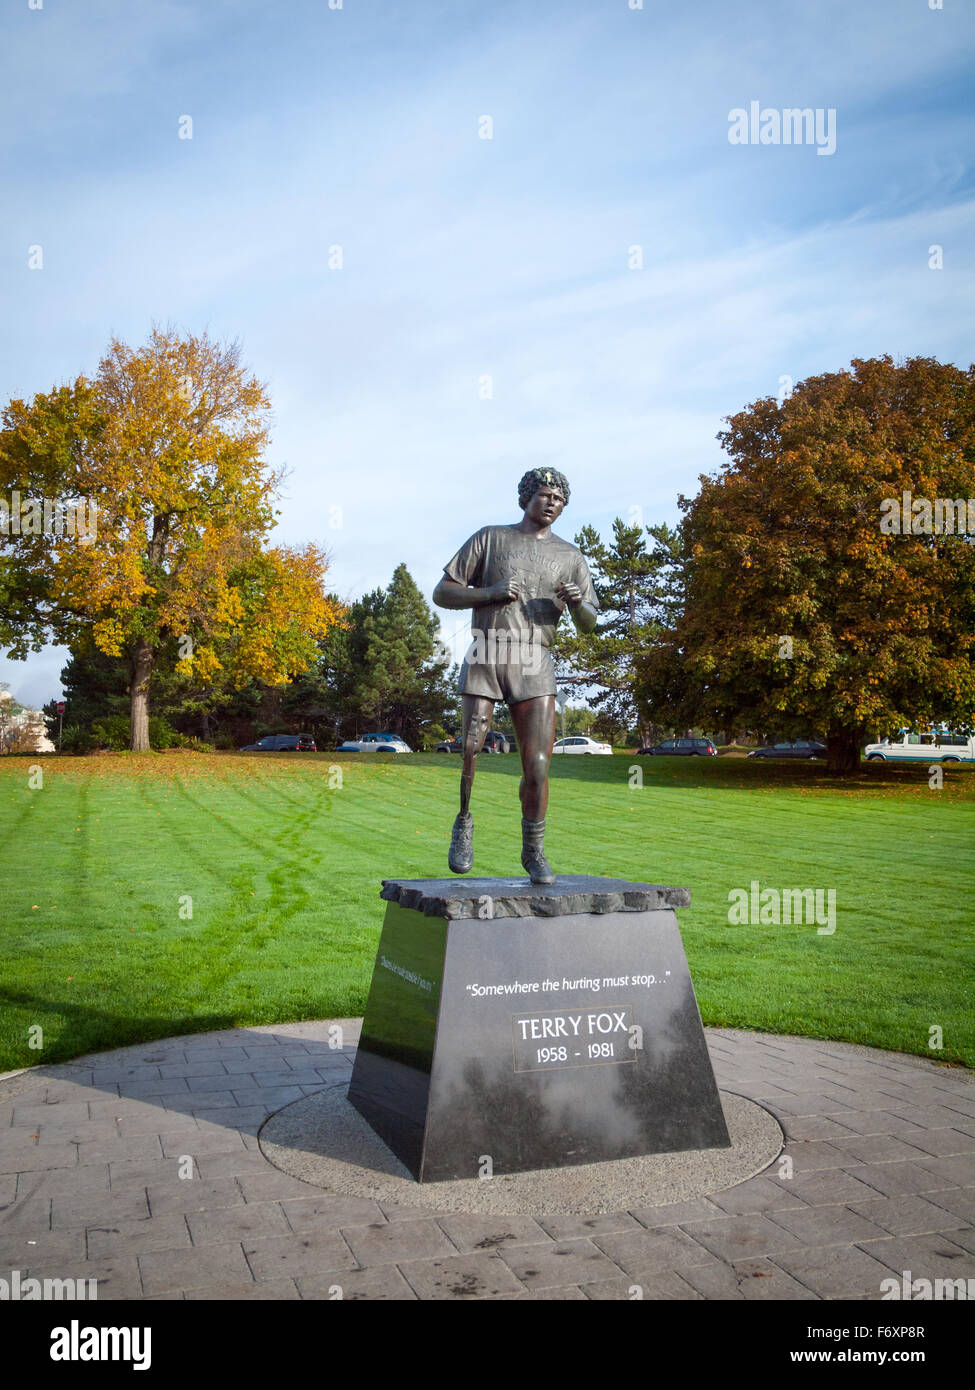 Eine Statue von Terry Fox am MIle Zero in Beacon Hill Park, Victoria, Britisch-Kolumbien, Kanada. Stockfoto